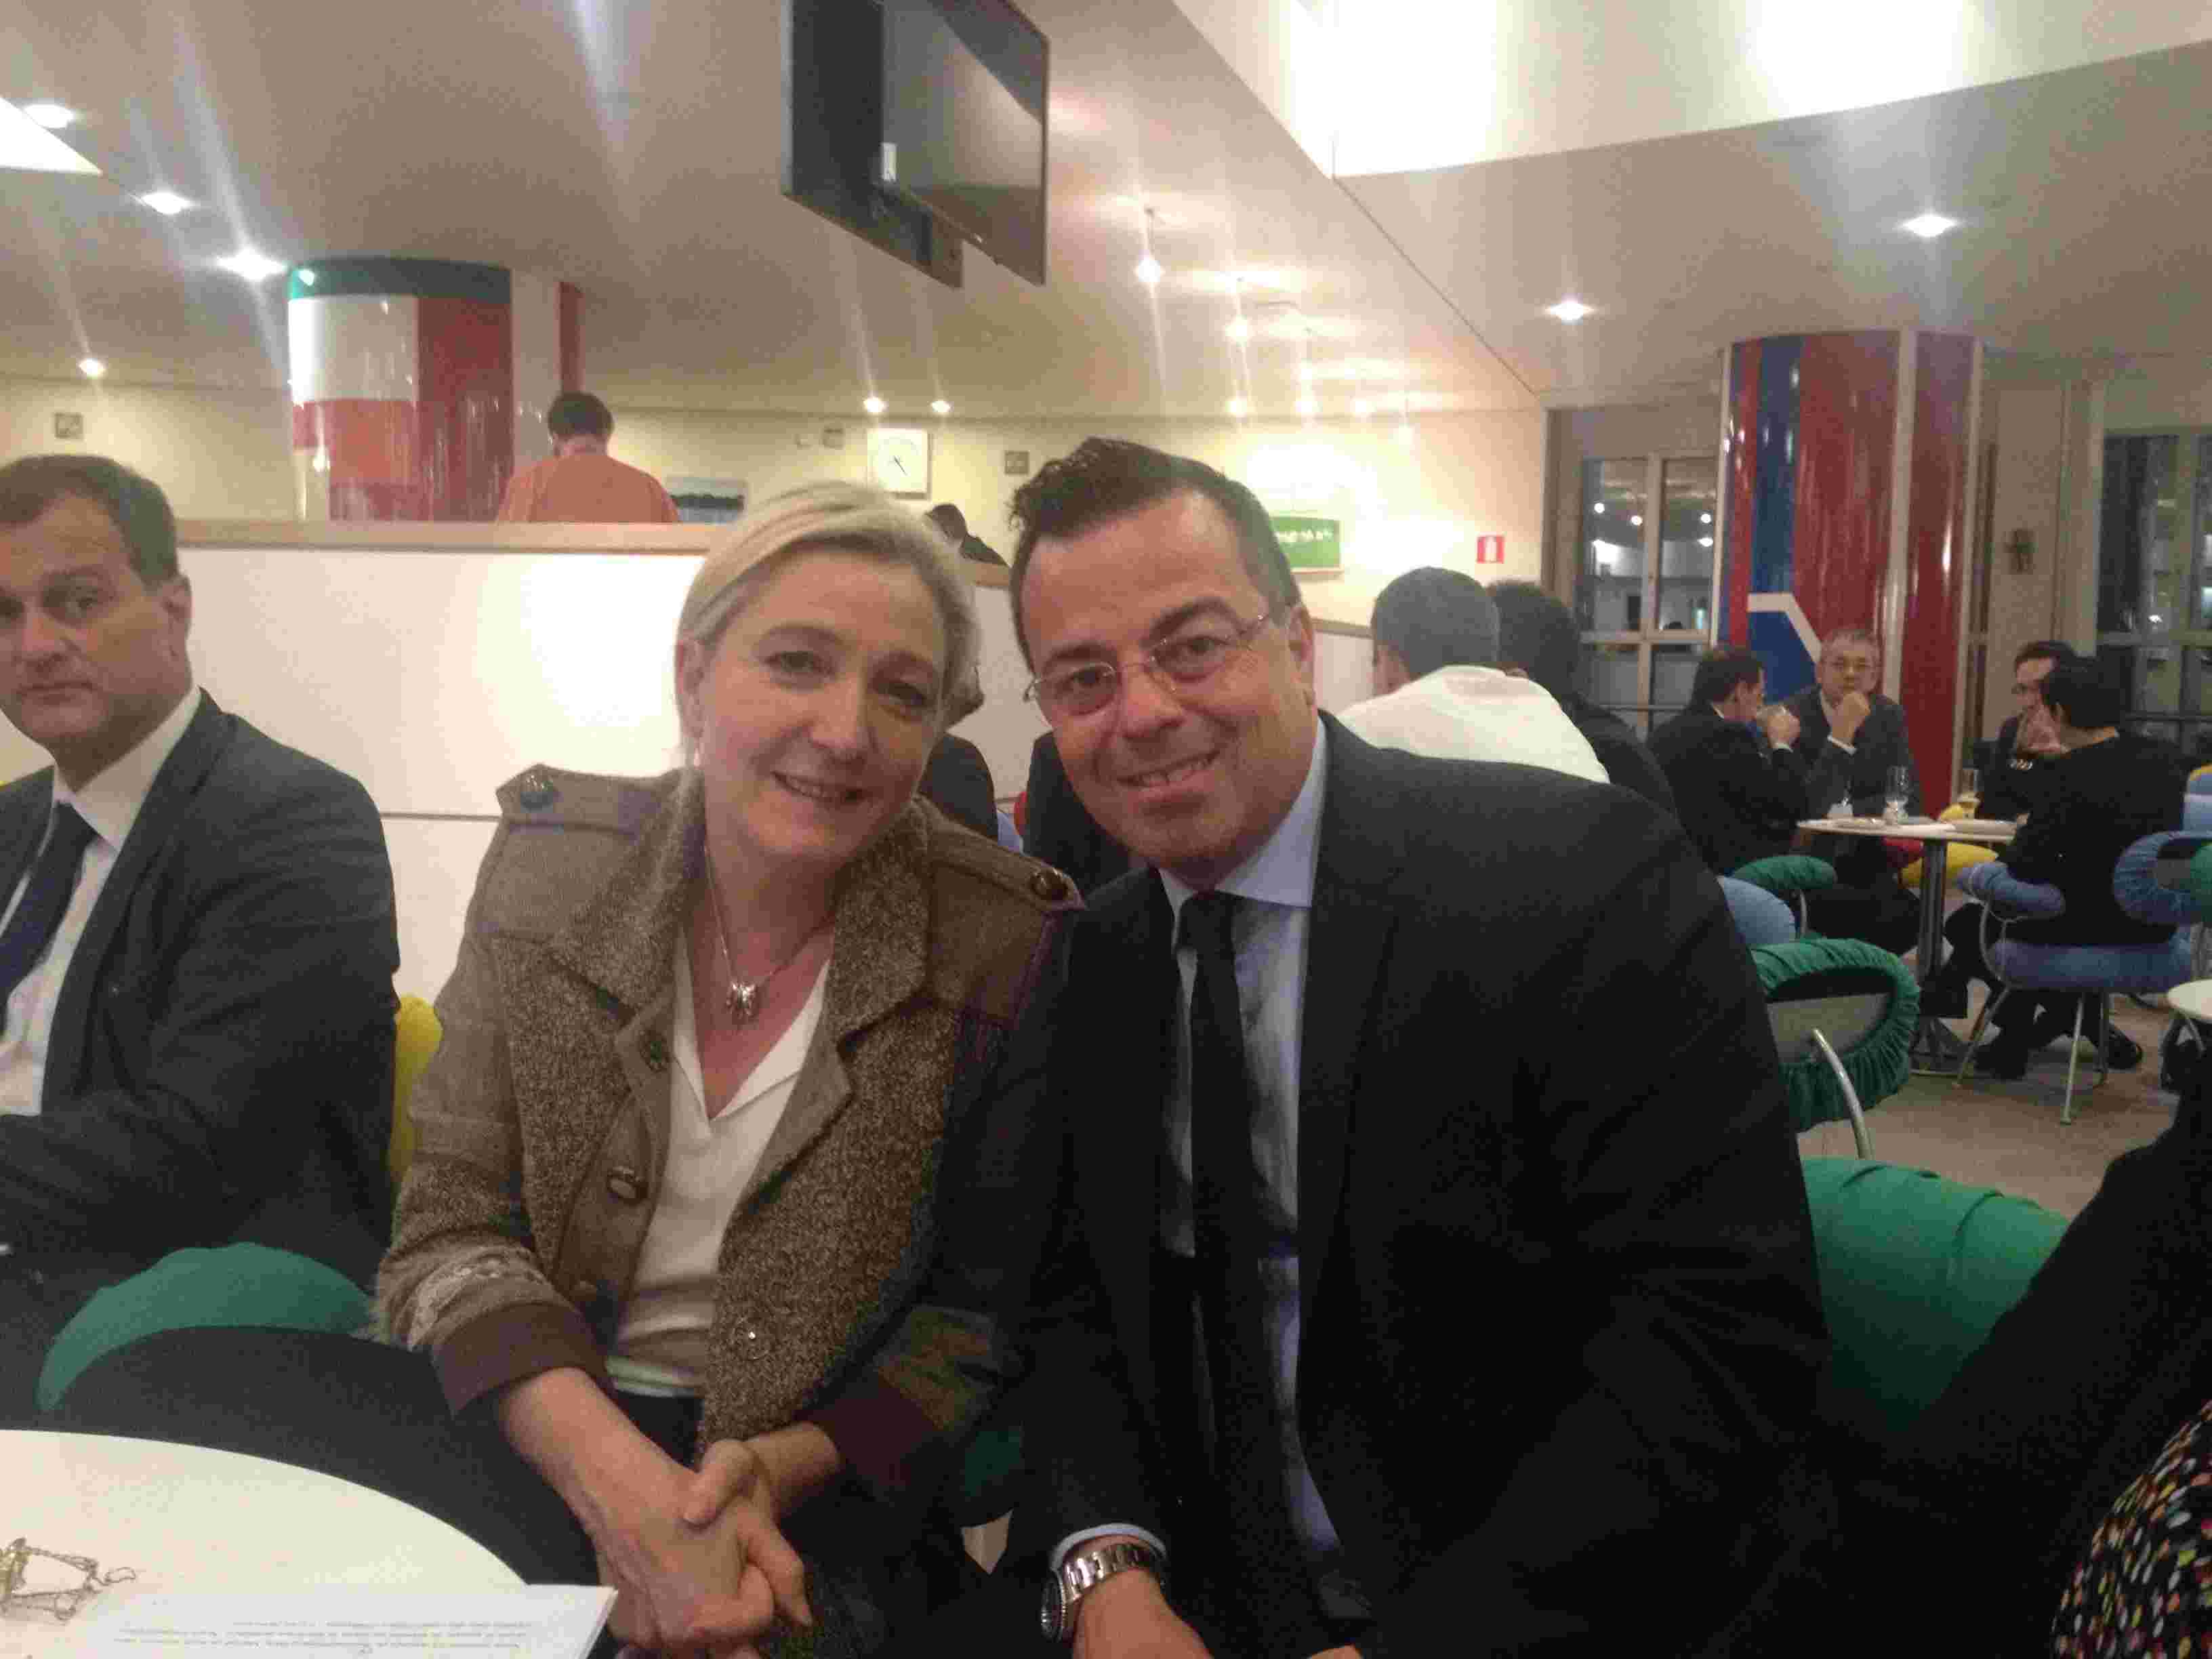 Buonanno, Sindaco di Borgosesia, propone cittadinanza onoraria a Marine Le Pen